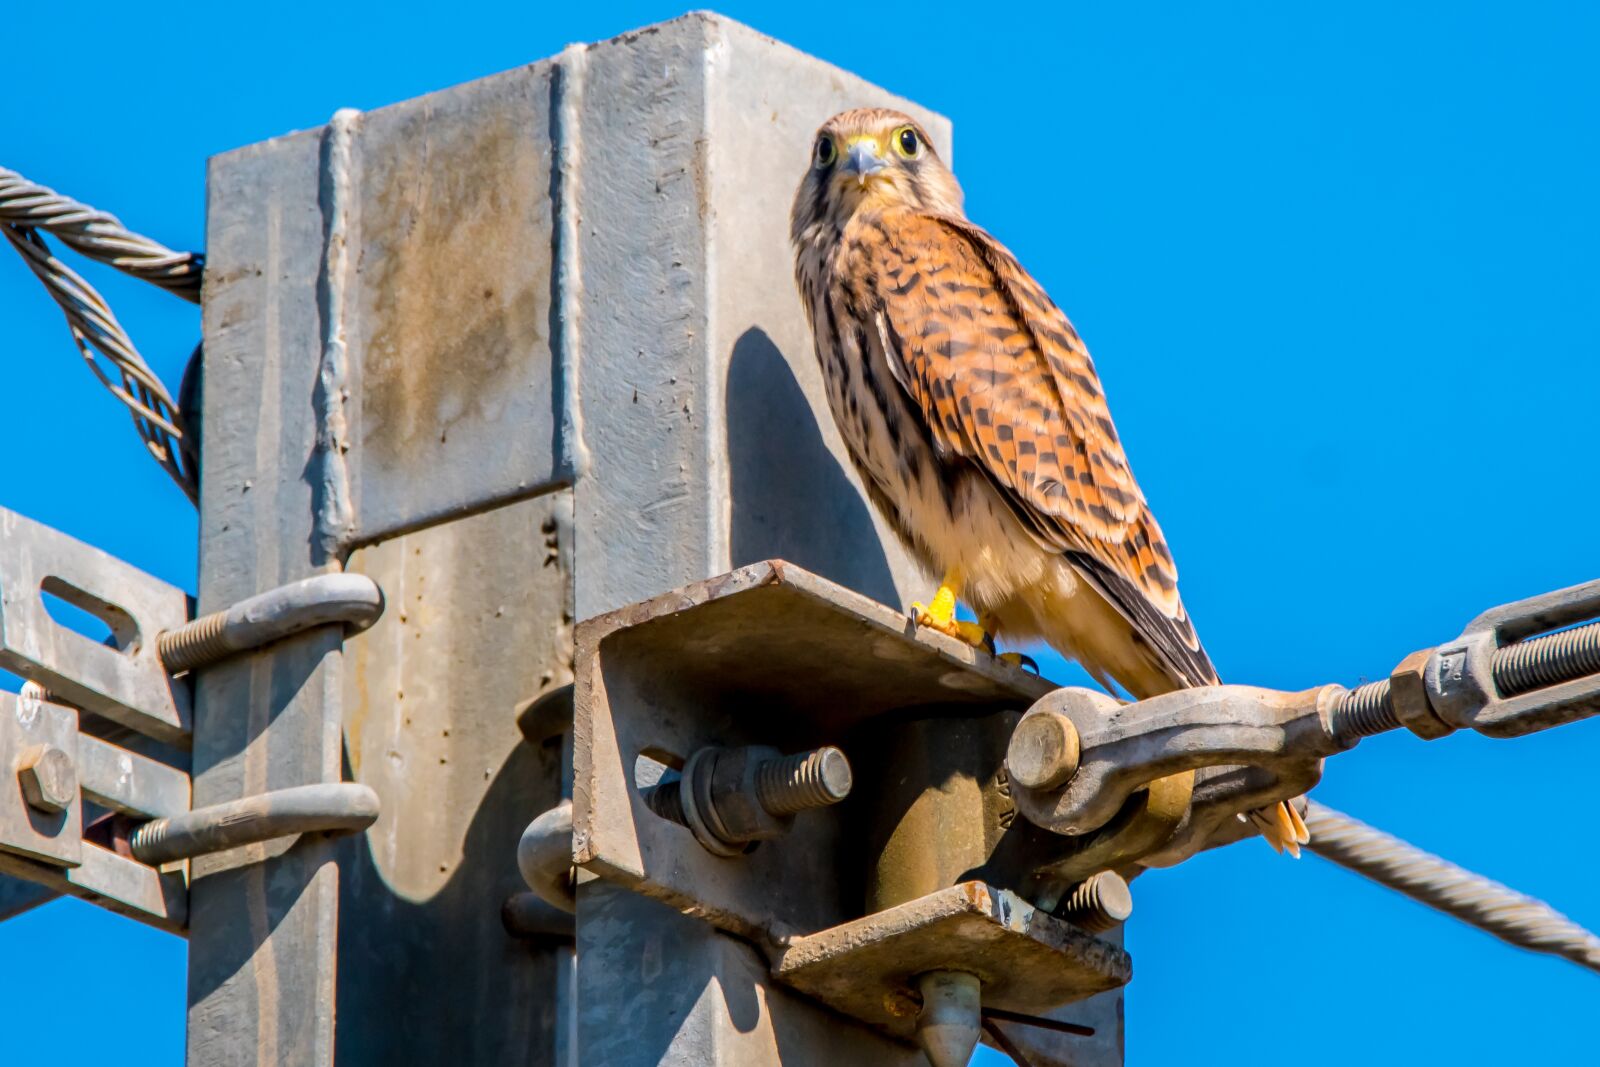 Nikon D7500 sample photo. Bird of prey, falcon photography